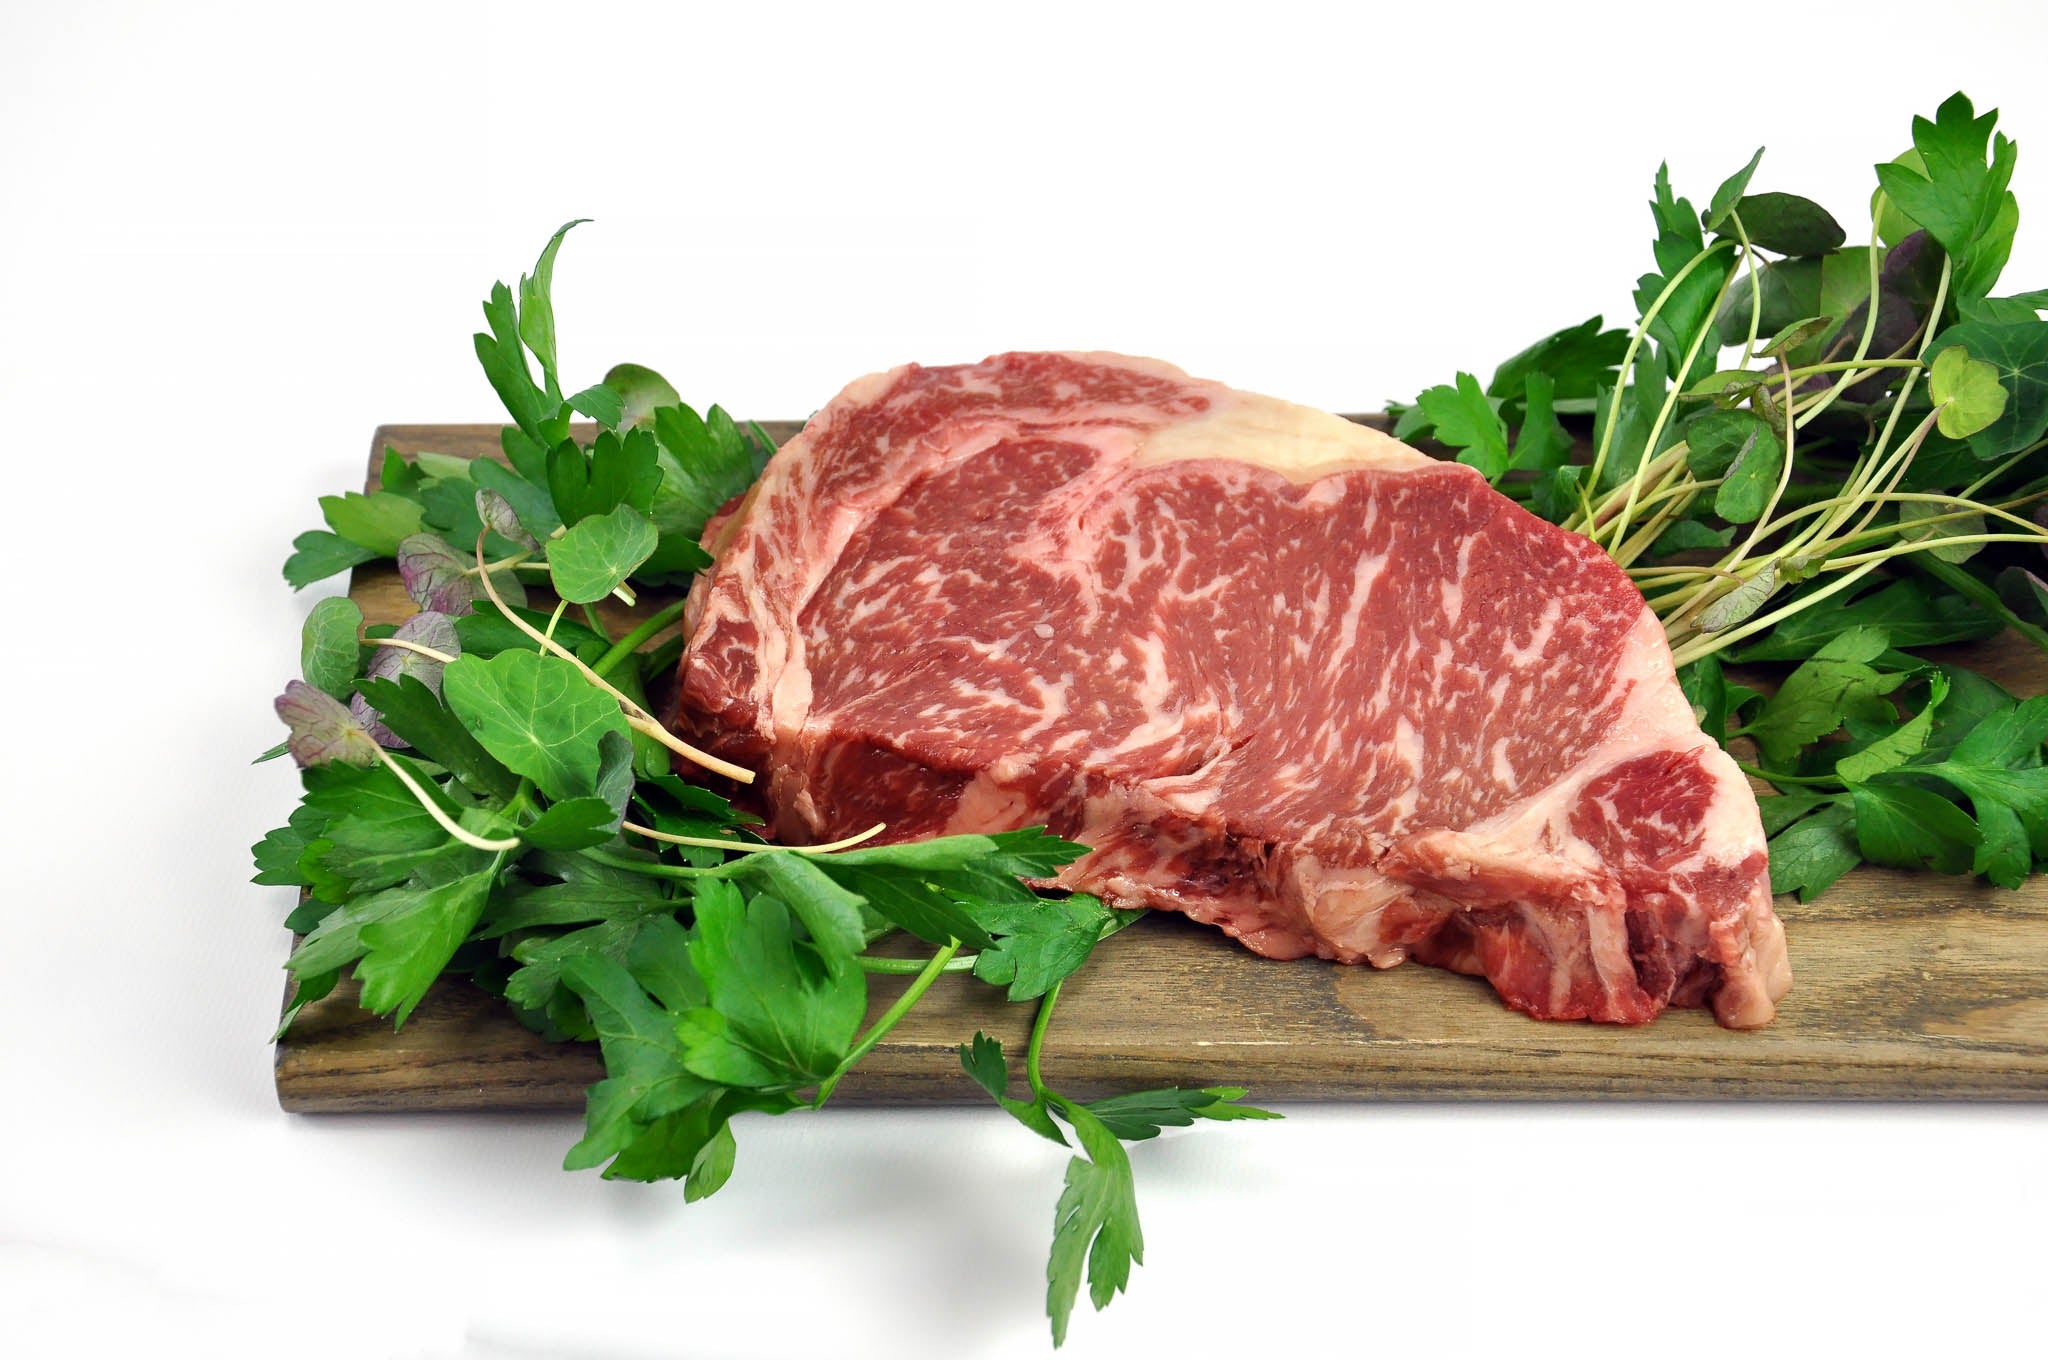 Thịt bò Wagyu là loại thịt cao cấp nhất được chăm sóc kỹ lưỡng và có hương vị thơm ngon đặc trưng. Hãy mua thịt bò Wagyu trực tuyến ngay để trải nghiệm trọn vẹn hương vị này.